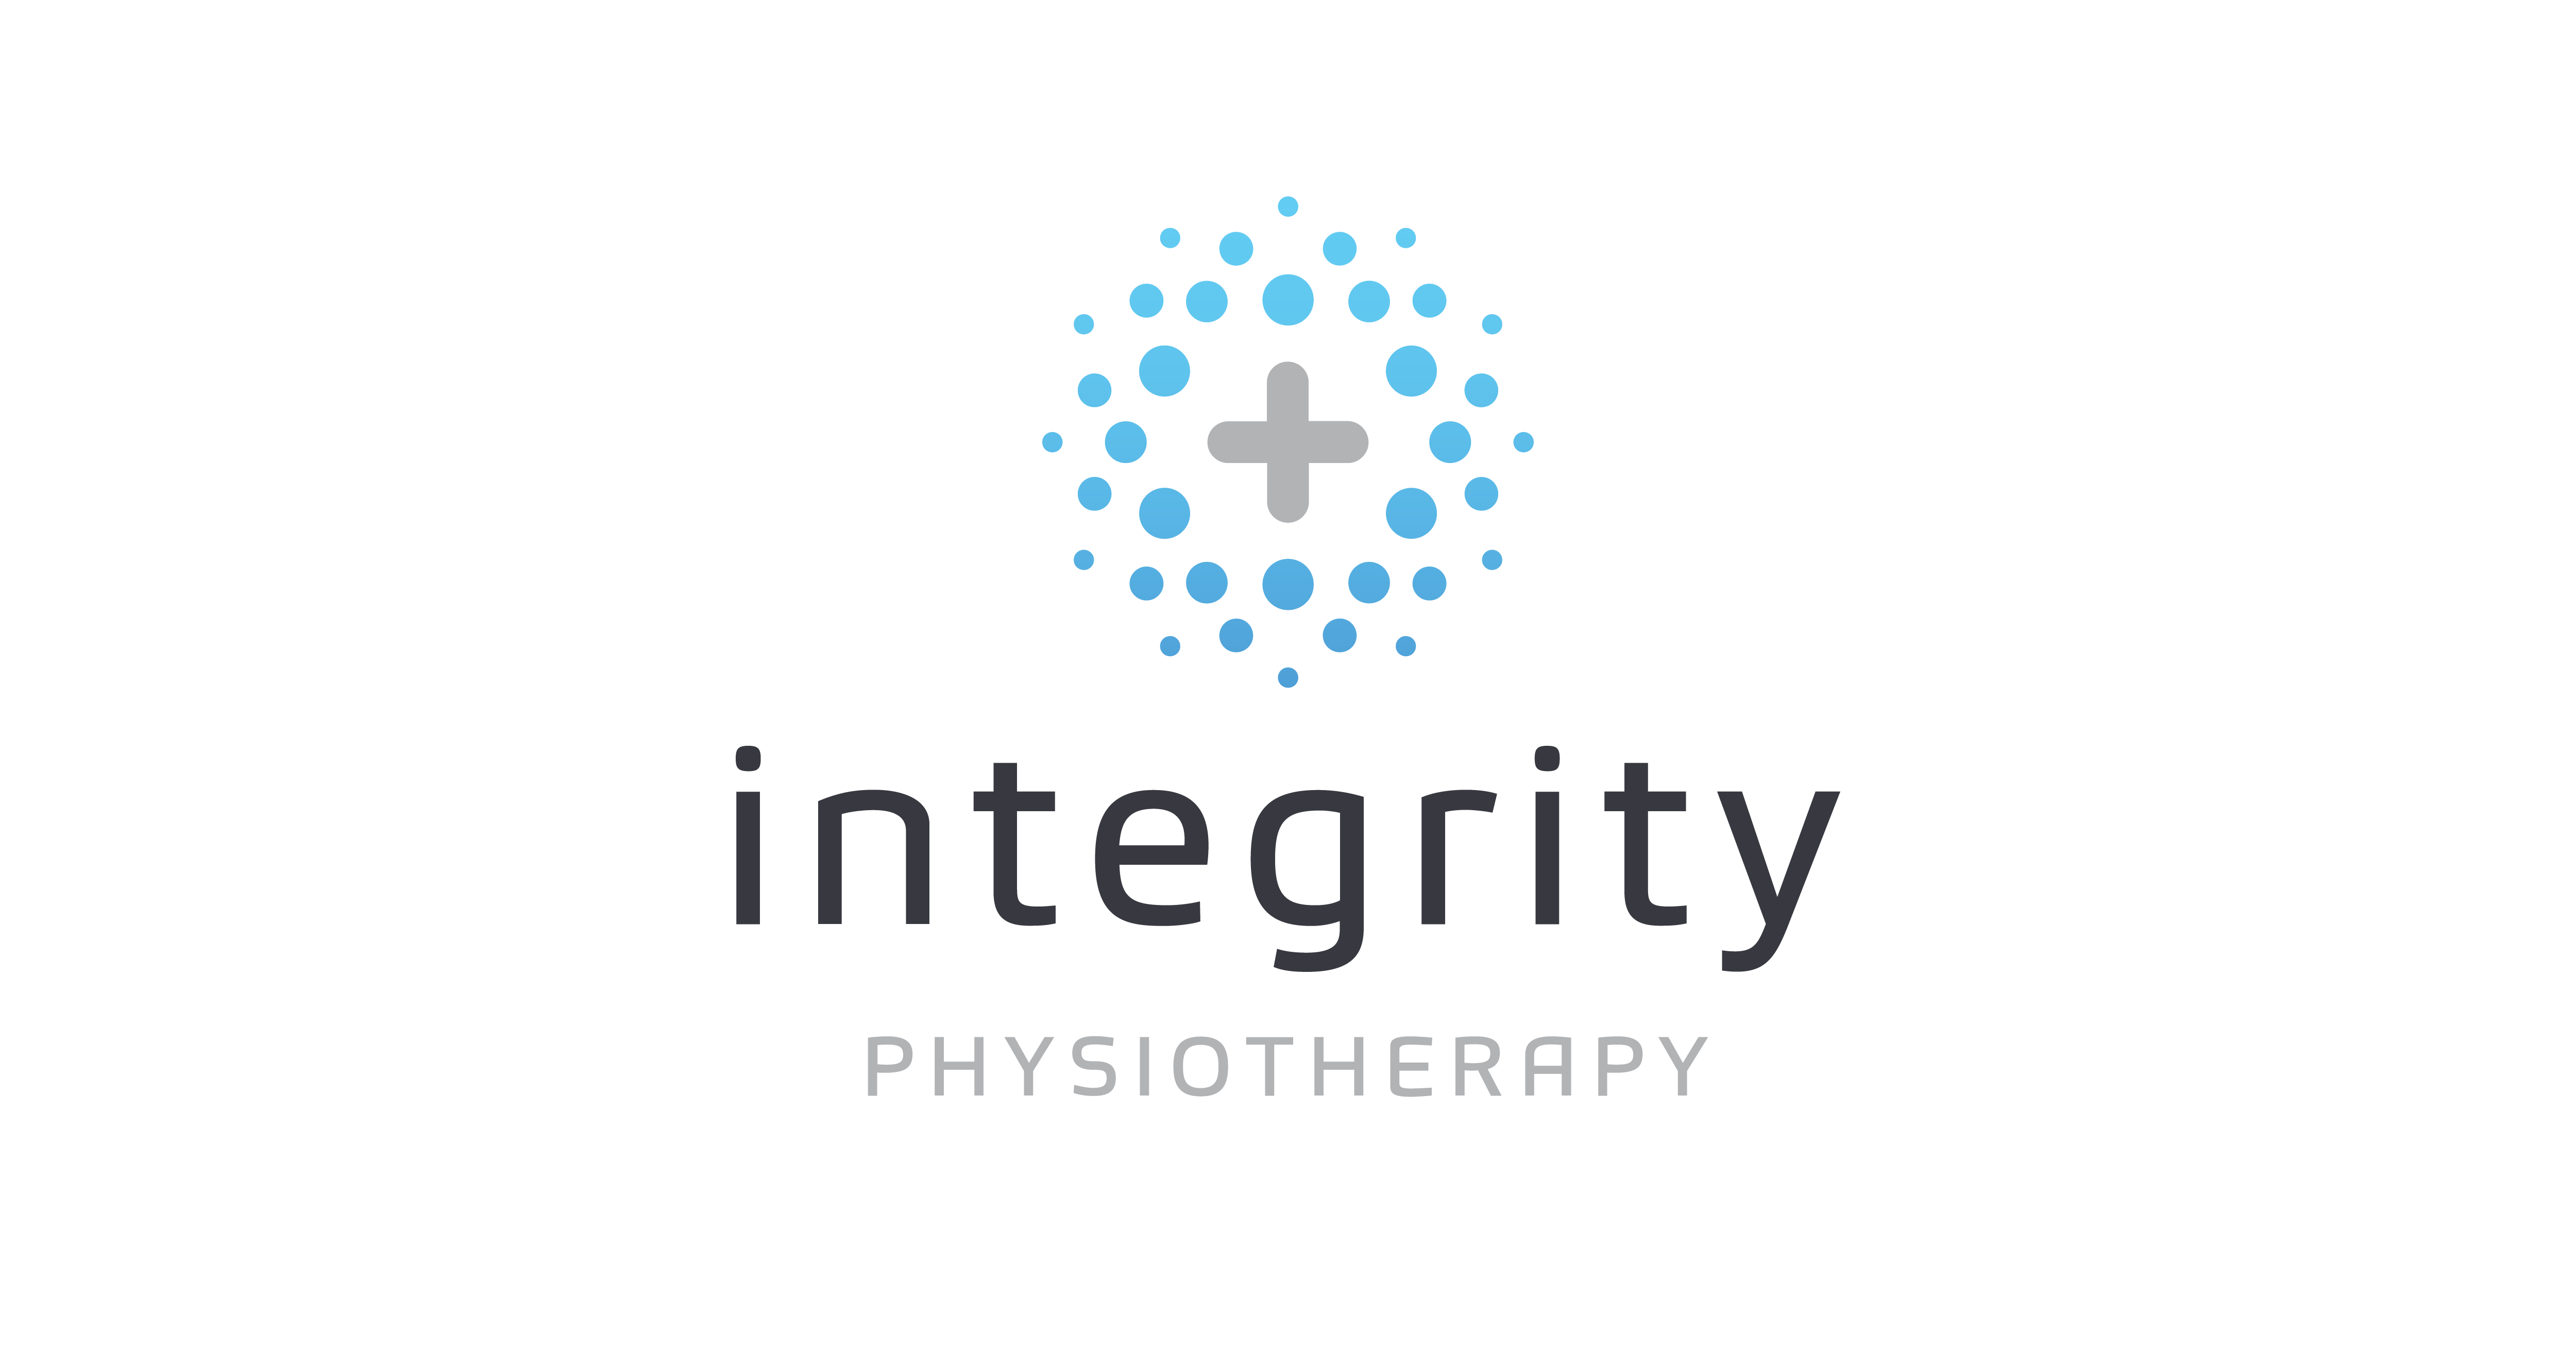 Integrity Physio Como